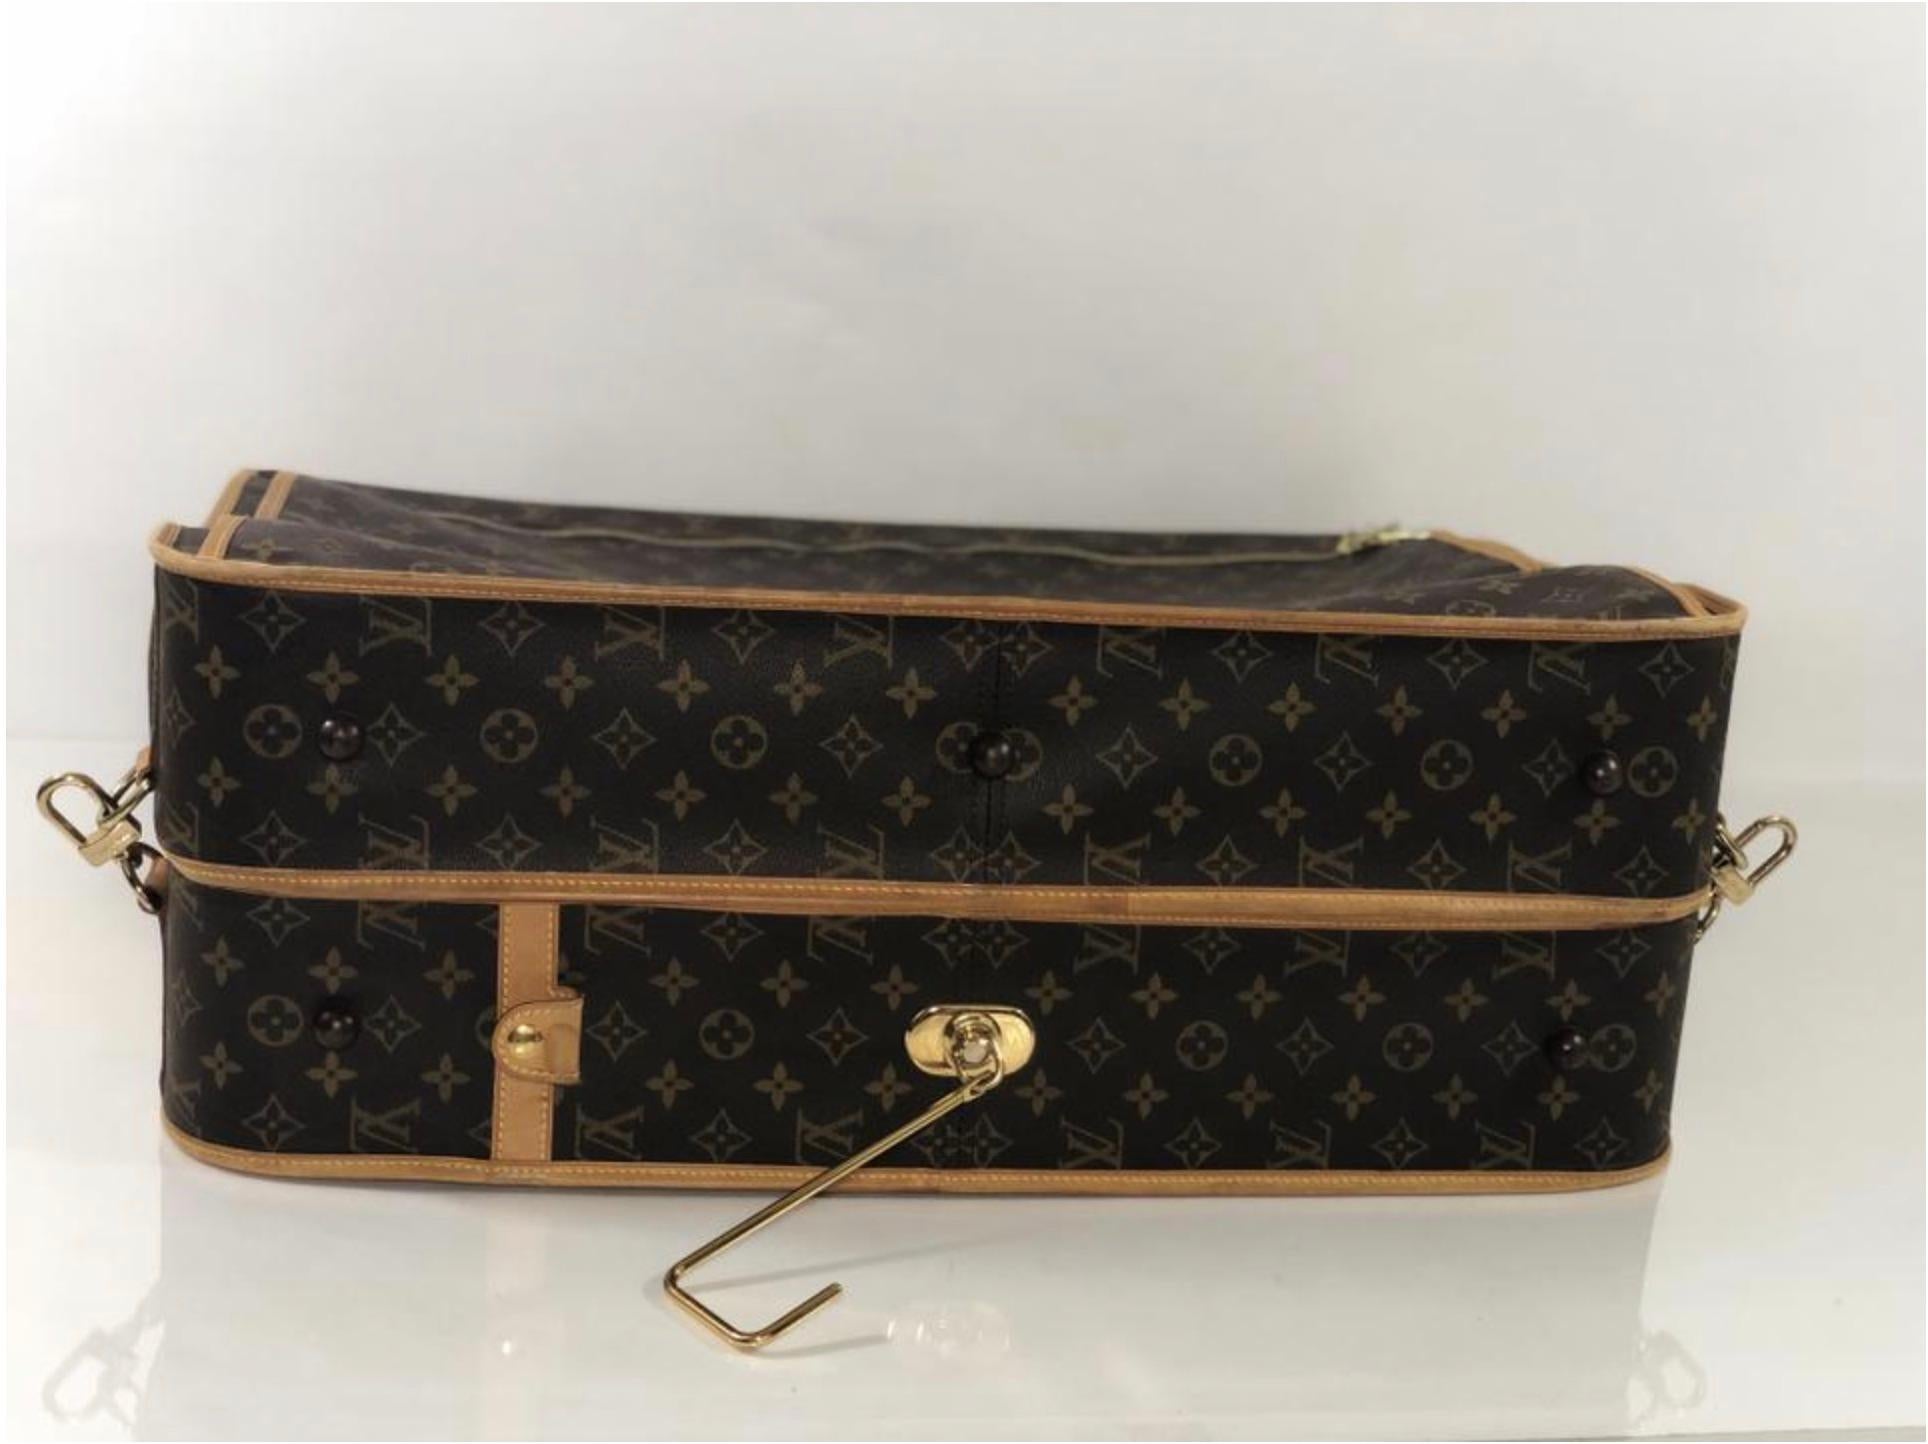  Louis Vuitton Monogram Portable Cabine Garment Cover Travel Handbag For Sale 2